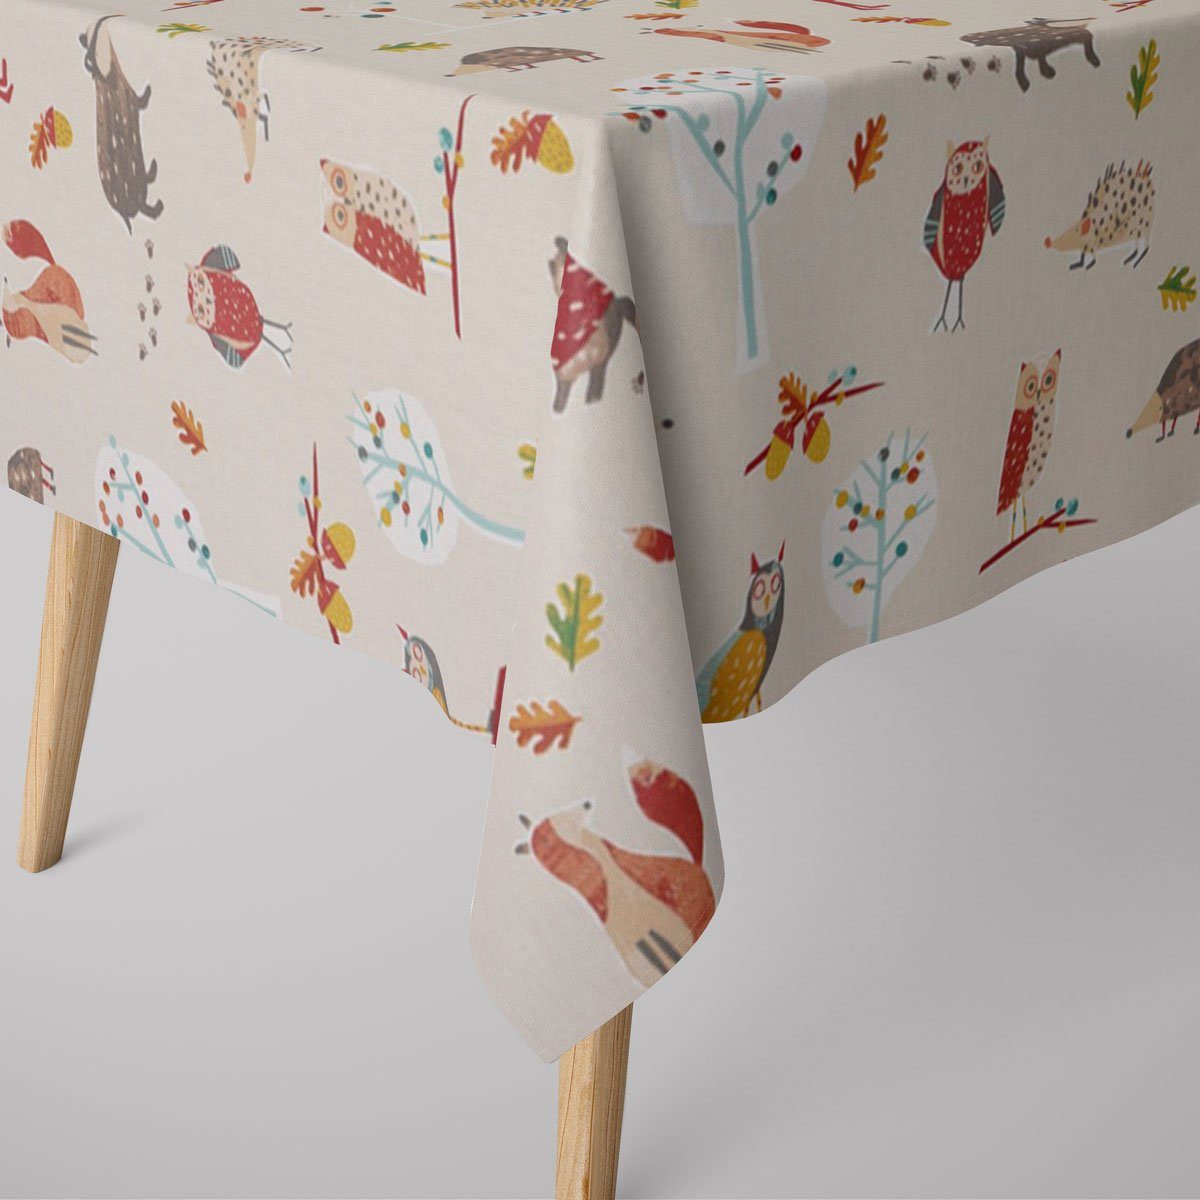 SCHÖNER LEBEN. Tischdecke SCHÖNER LEBEN. Tischdecke Herbie Butterscotch Waldtiere beige bunt, handmade | Tischdecken